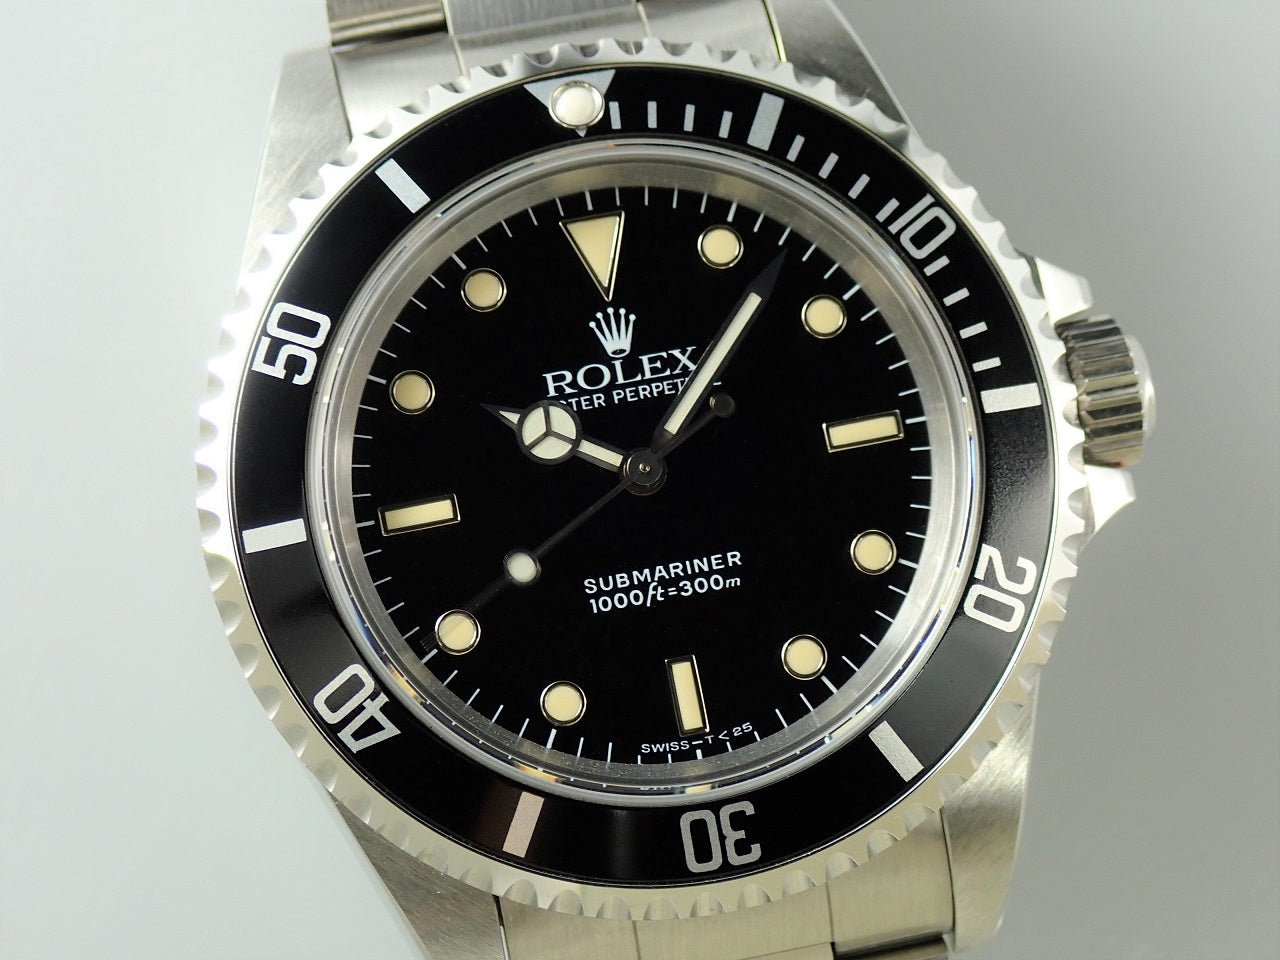 Rolex Submariner No Date &lt;Warranty, Box, etc.&gt;